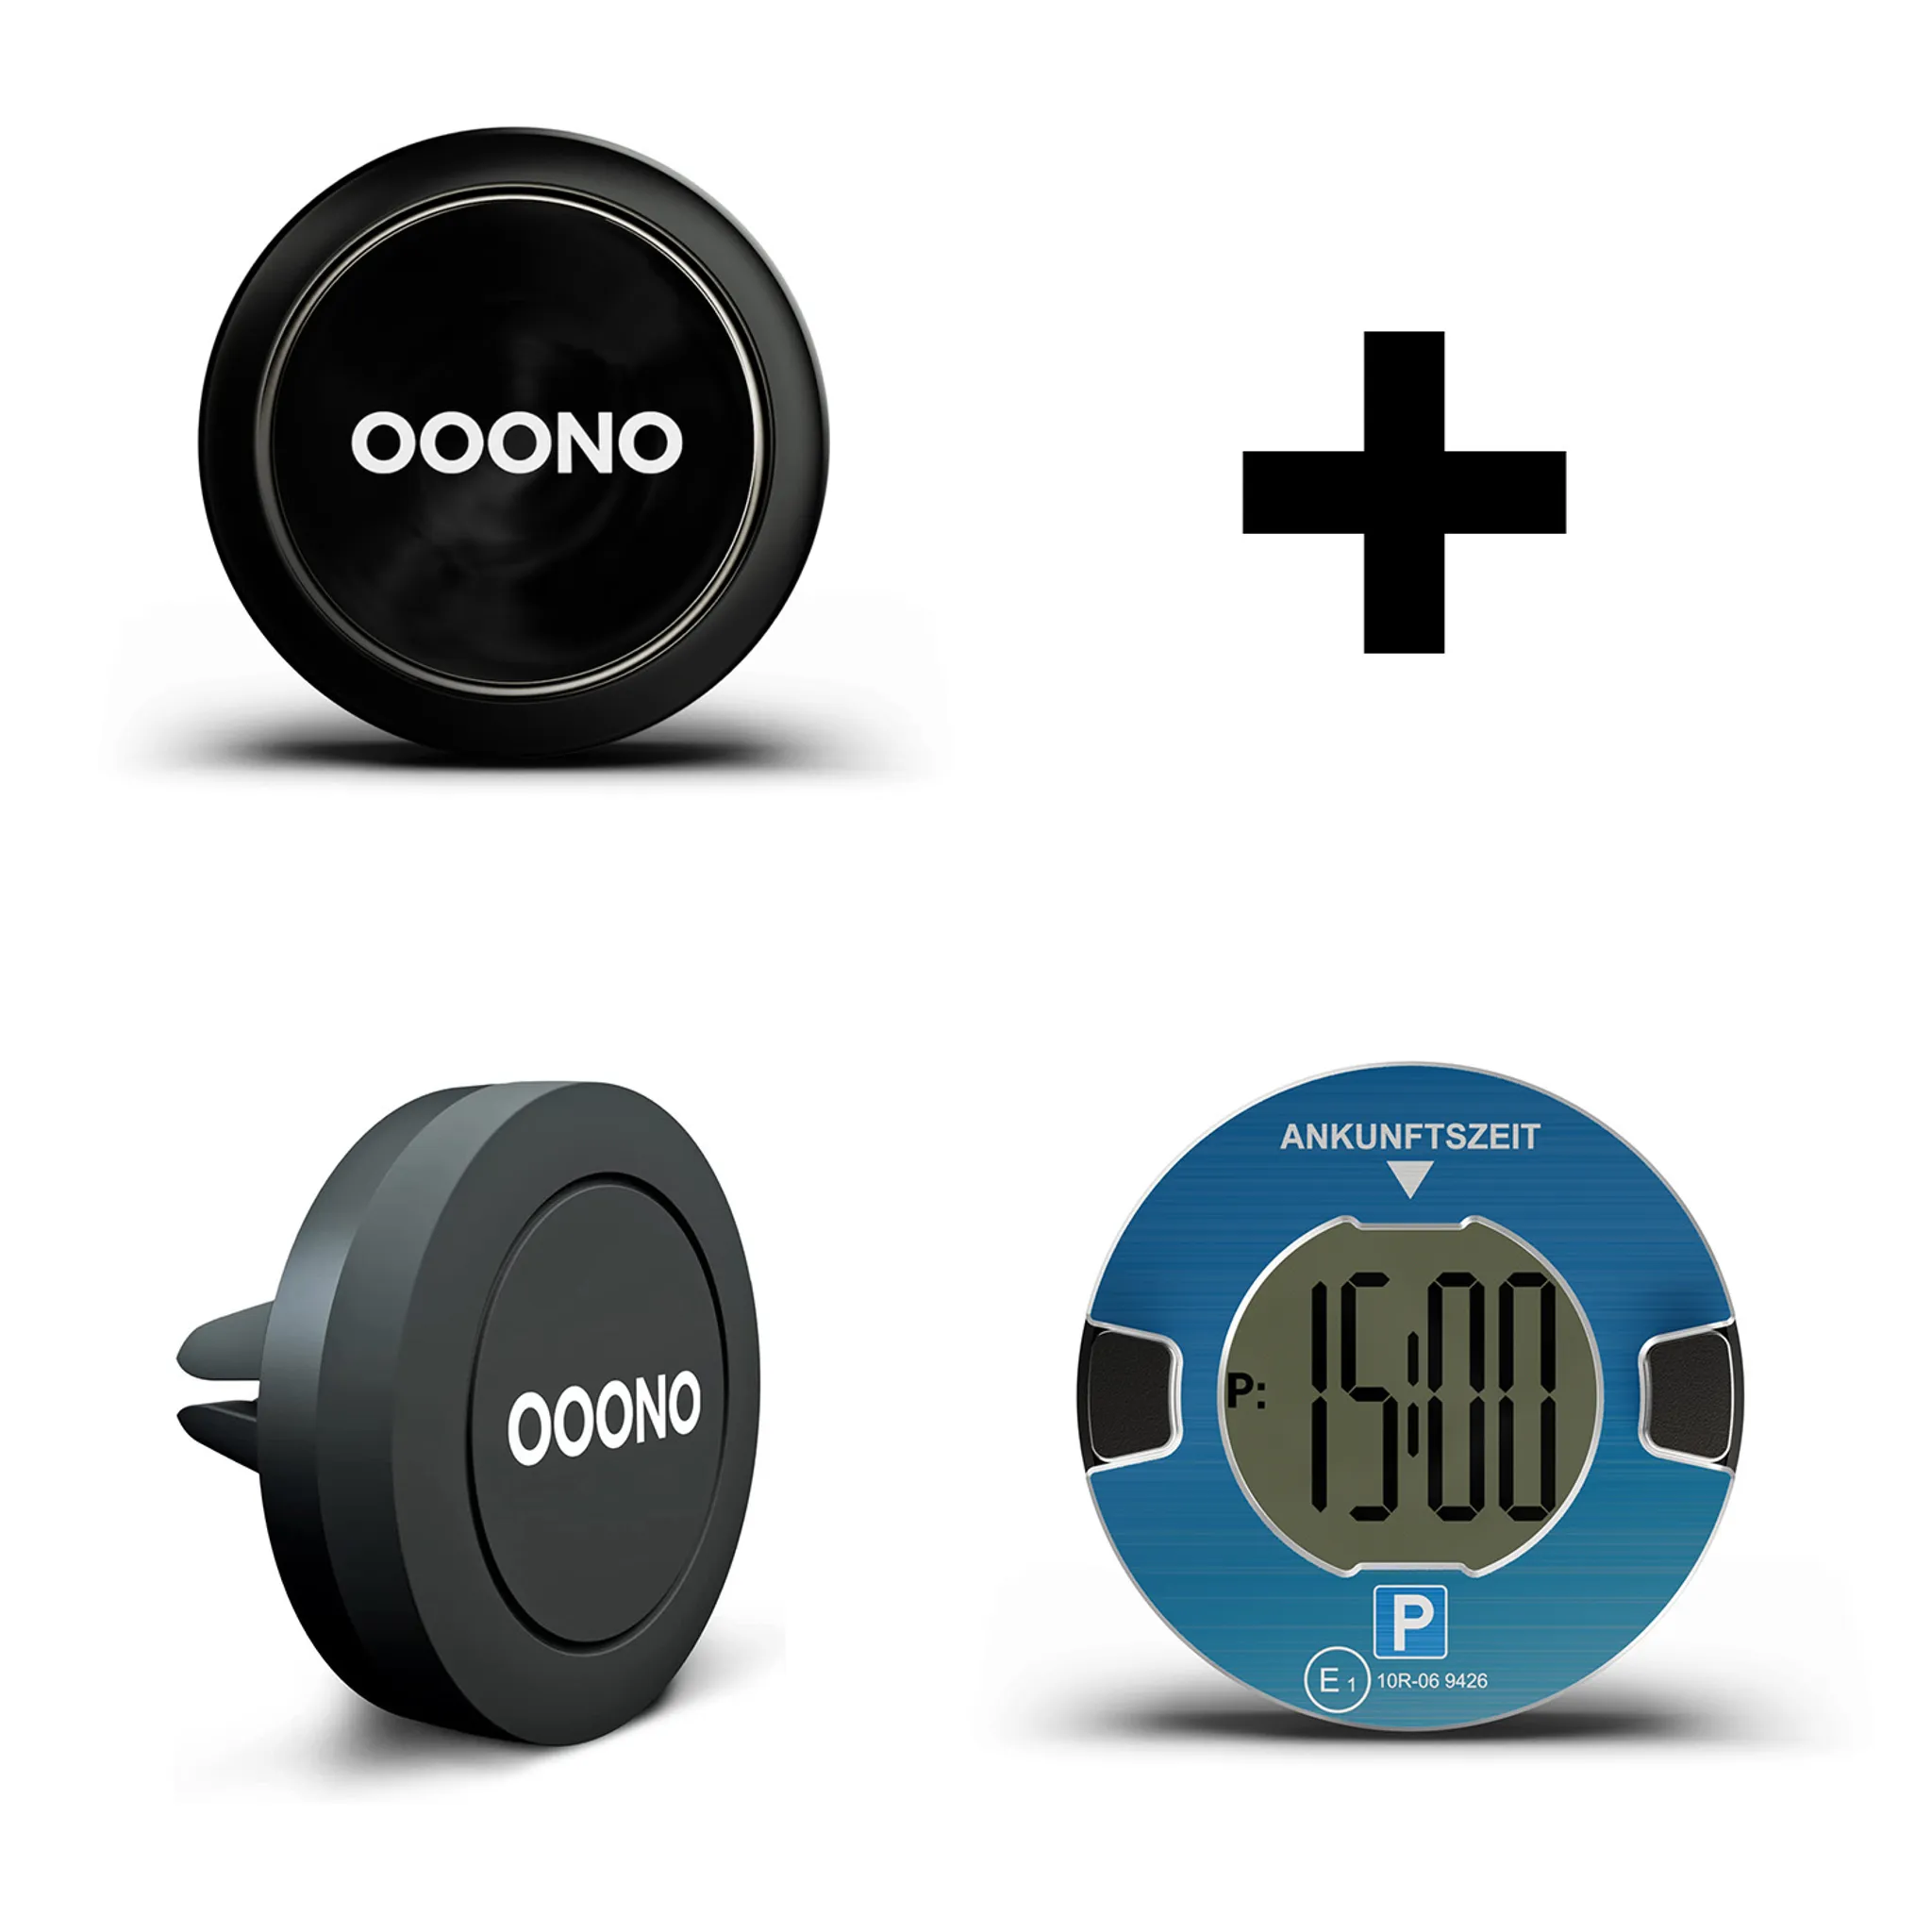 Ooono-Gadgets günstiger: Blitzerwarner und E-Parkscheibe im